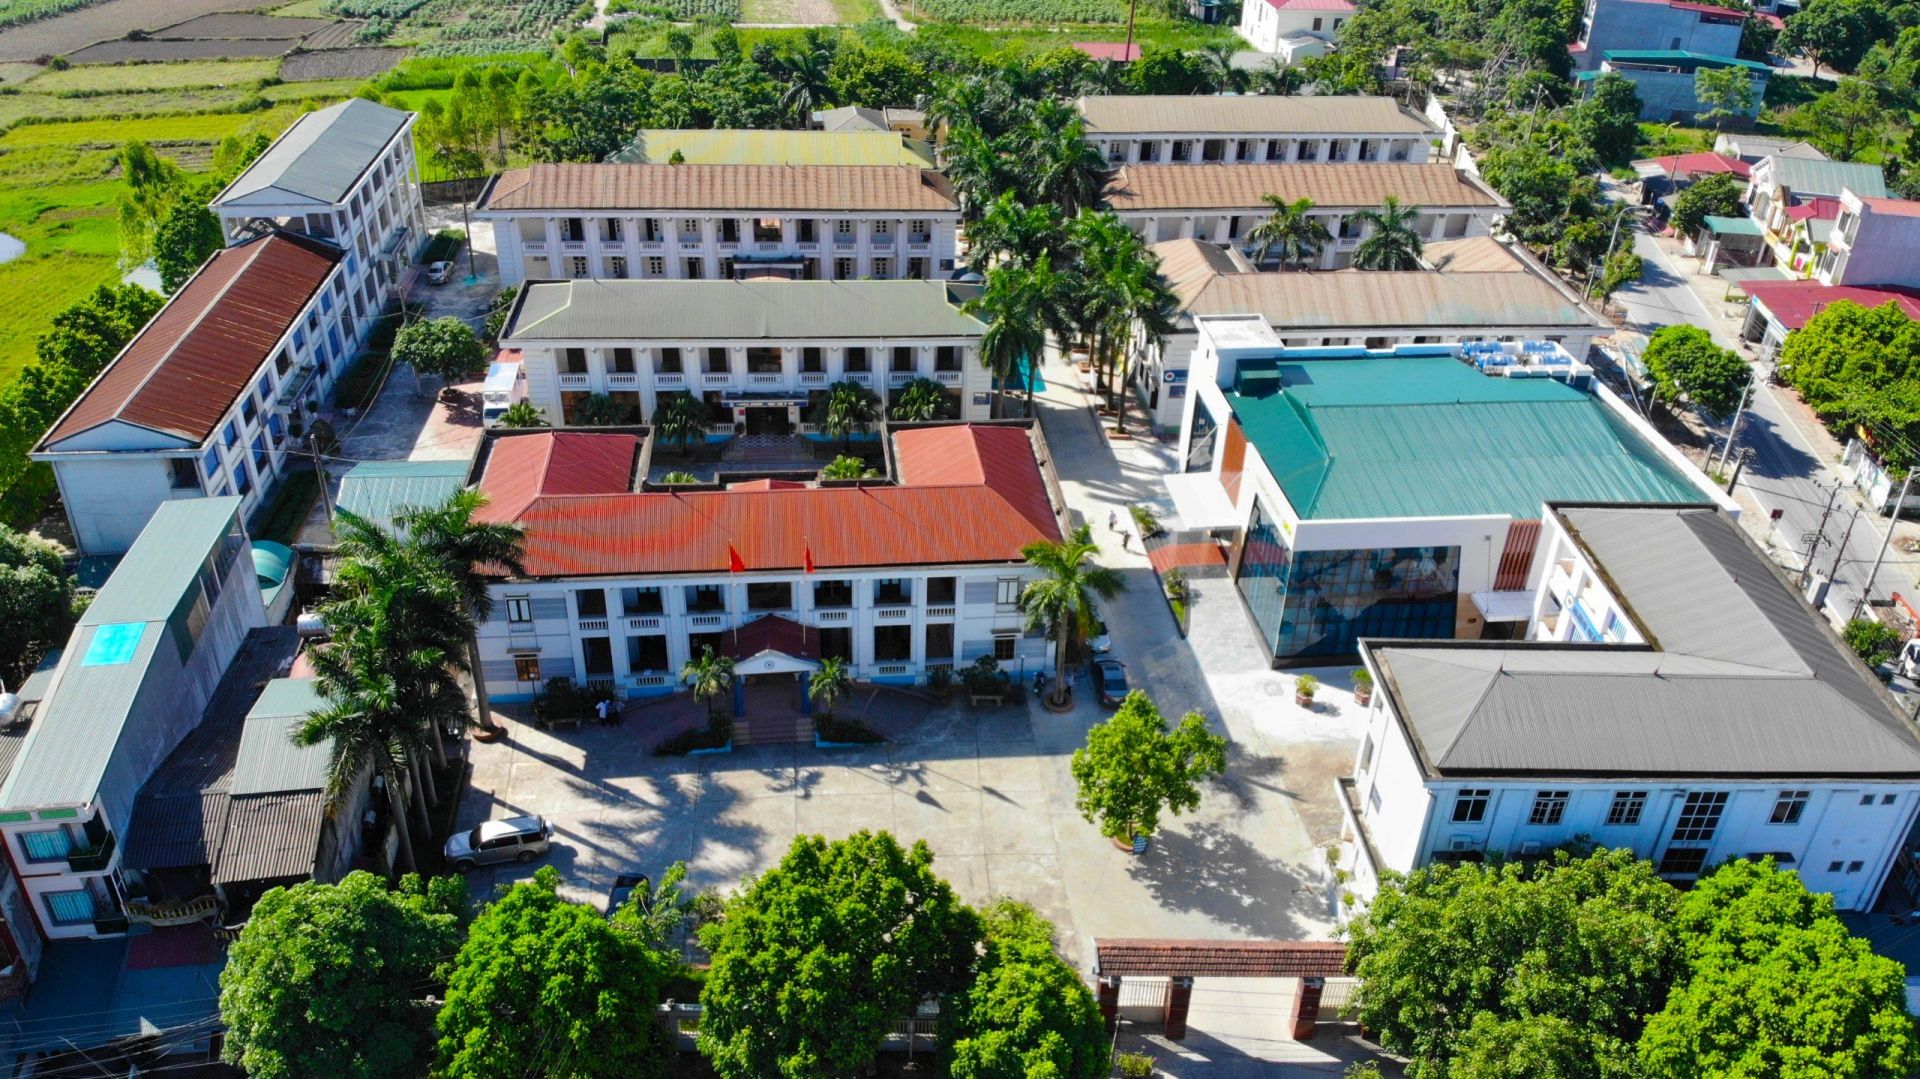 Bệnh viện Phổi tỉnh Phú Thọ là bệnh viện chuyên khoa hạng II, tuyến tỉnh, trực thuộc Sở Y tế Phú Thọ, quy mô 200 giường bệnh